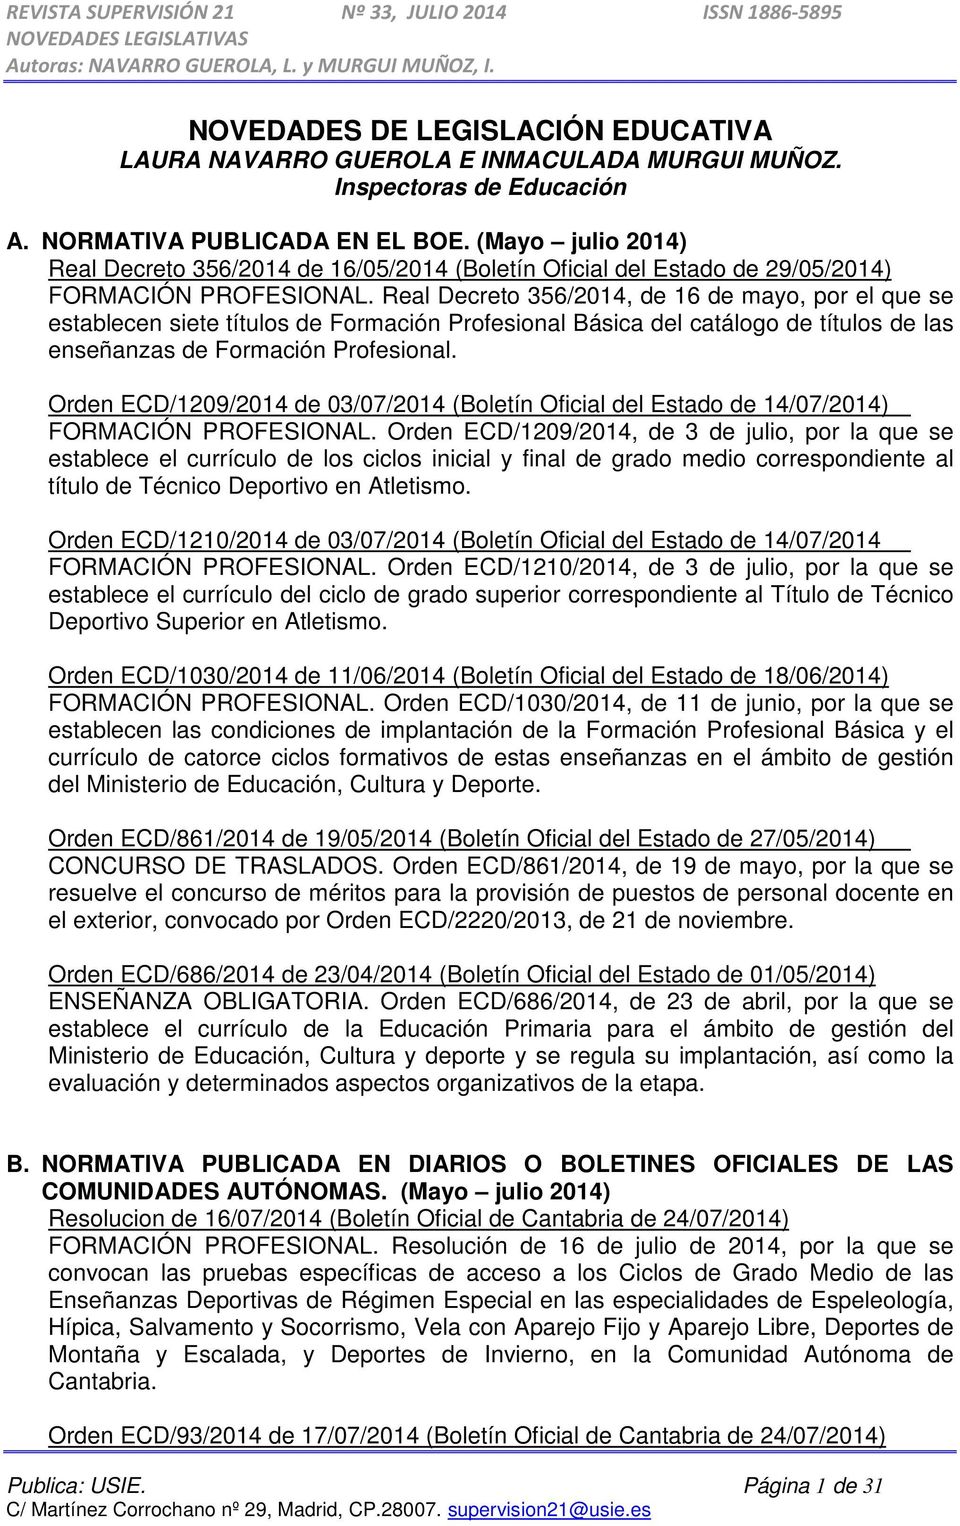 Real Decreto 356/2014, de 16 de mayo, por el que se establecen siete títulos de Formación Profesional Básica del catálogo de títulos de las enseñanzas de Formación Profesional.